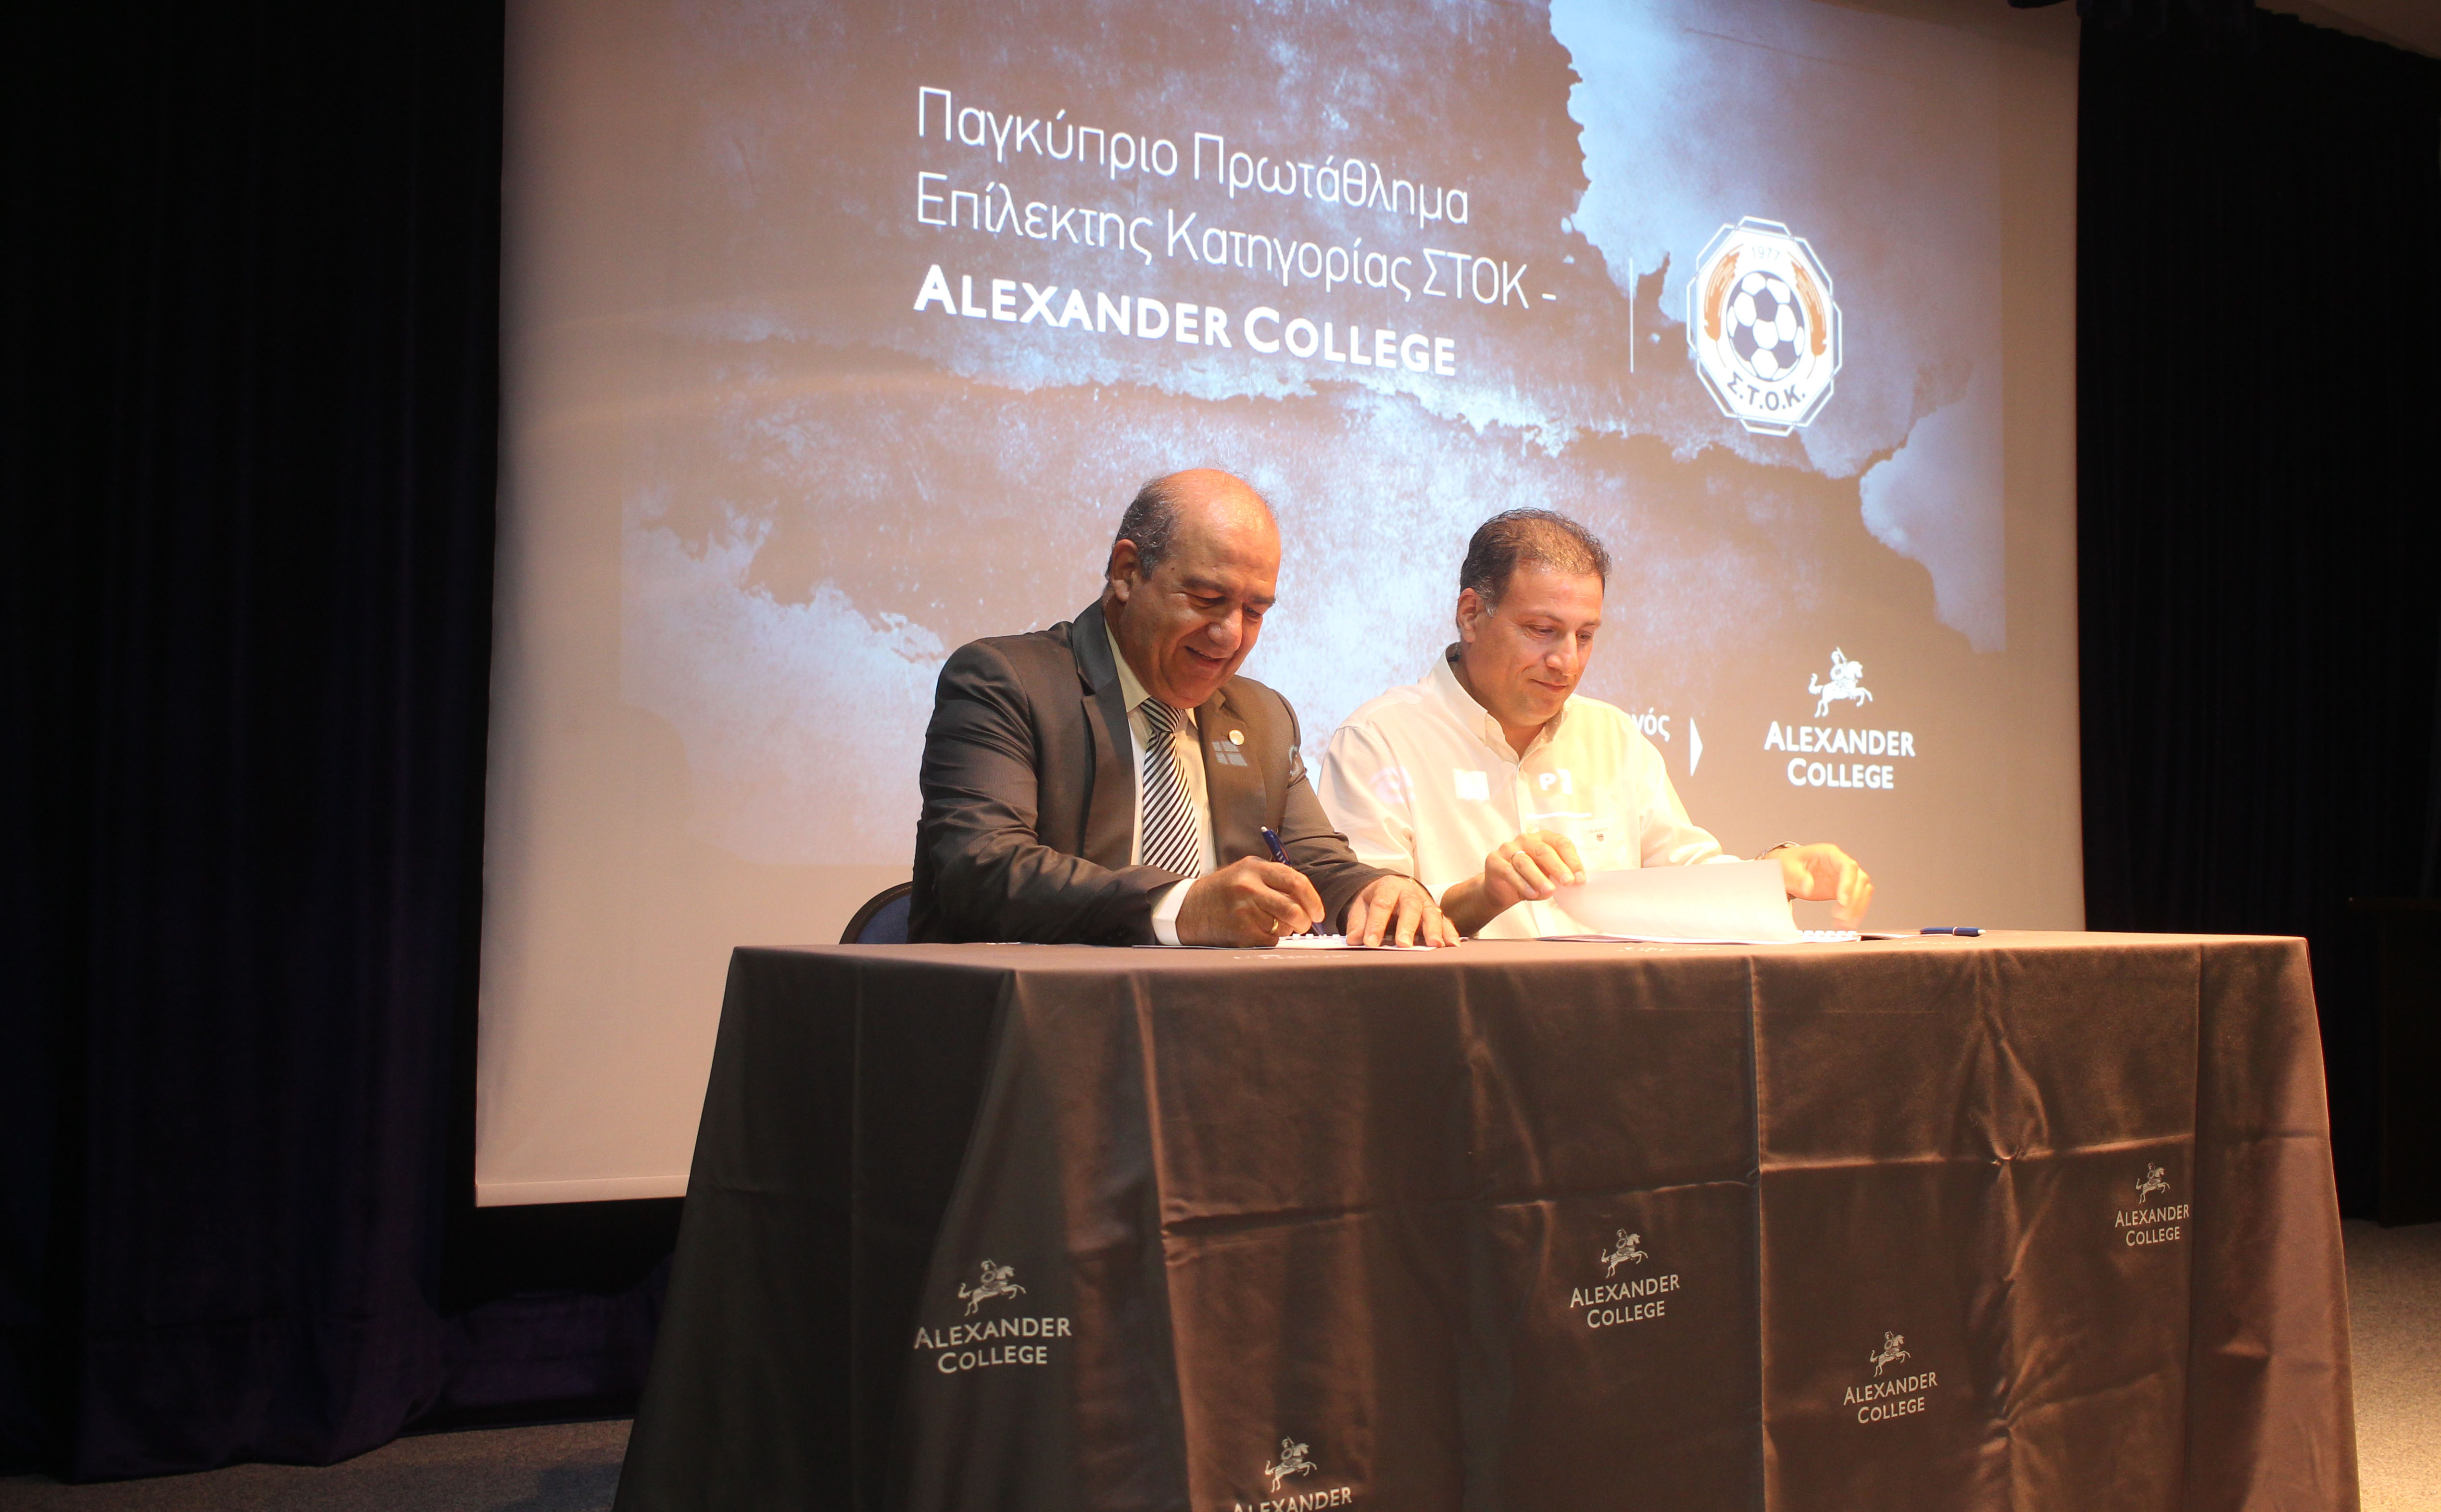 Πρωτάθλημα Επίλεκτης Κατηγορίας ΣΤΟΚ – Alexander College